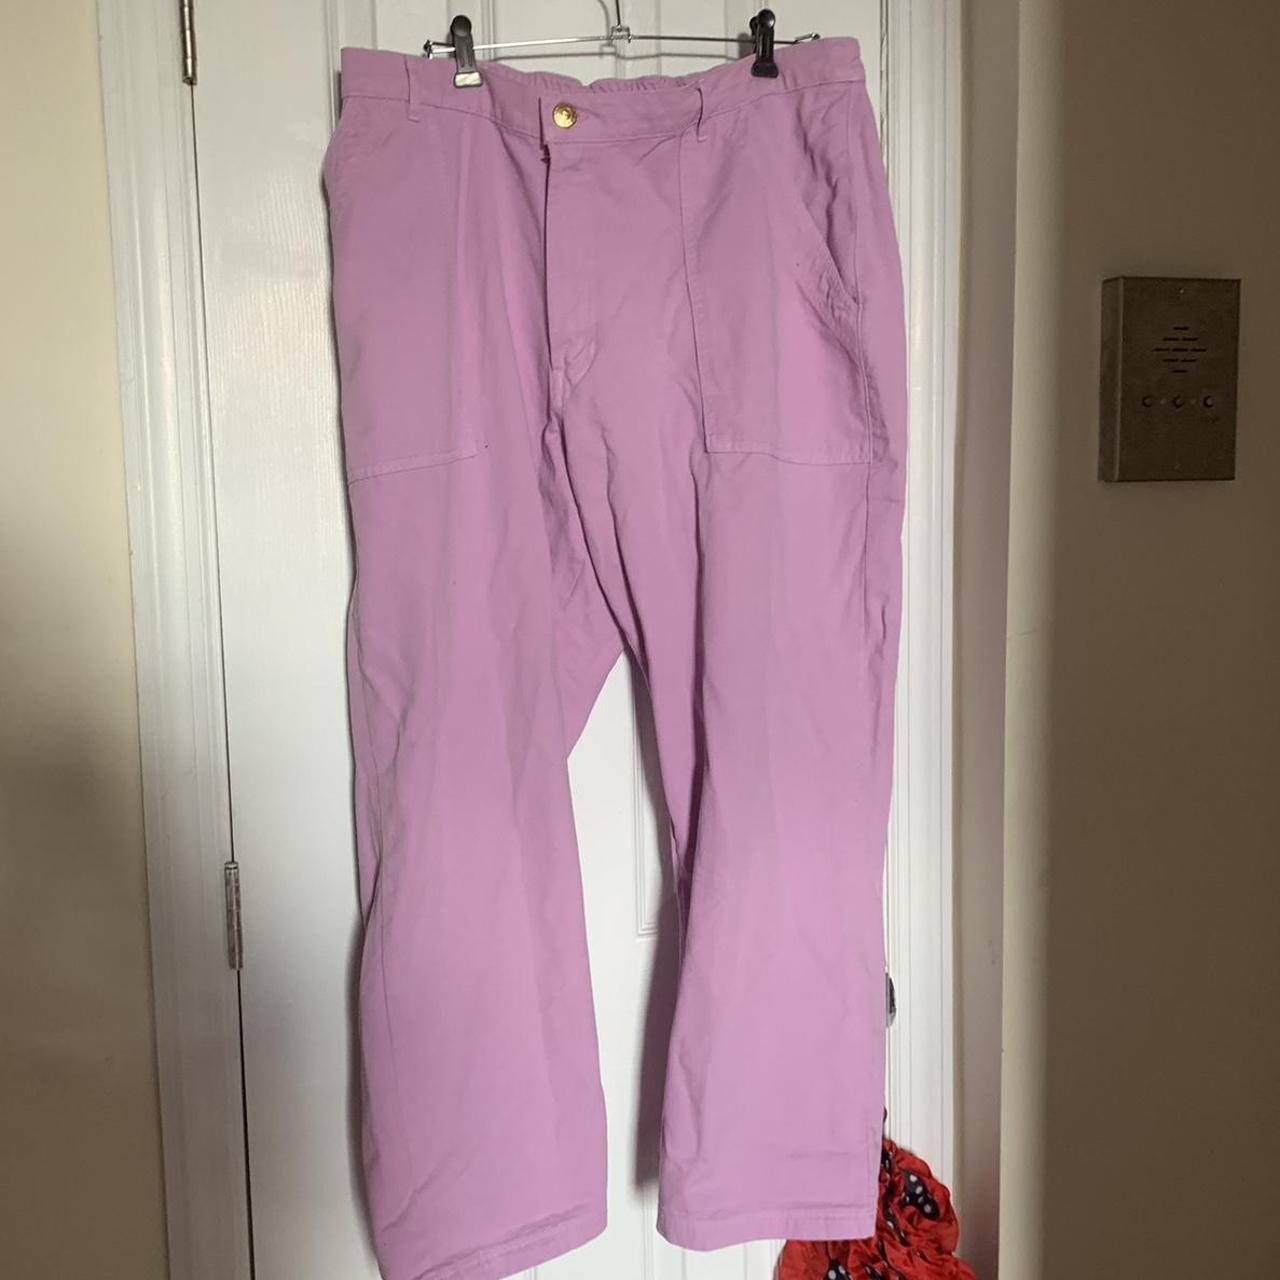 BRAND NEW big bud press Lilac pants in size 1XL 💜 i... - Depop